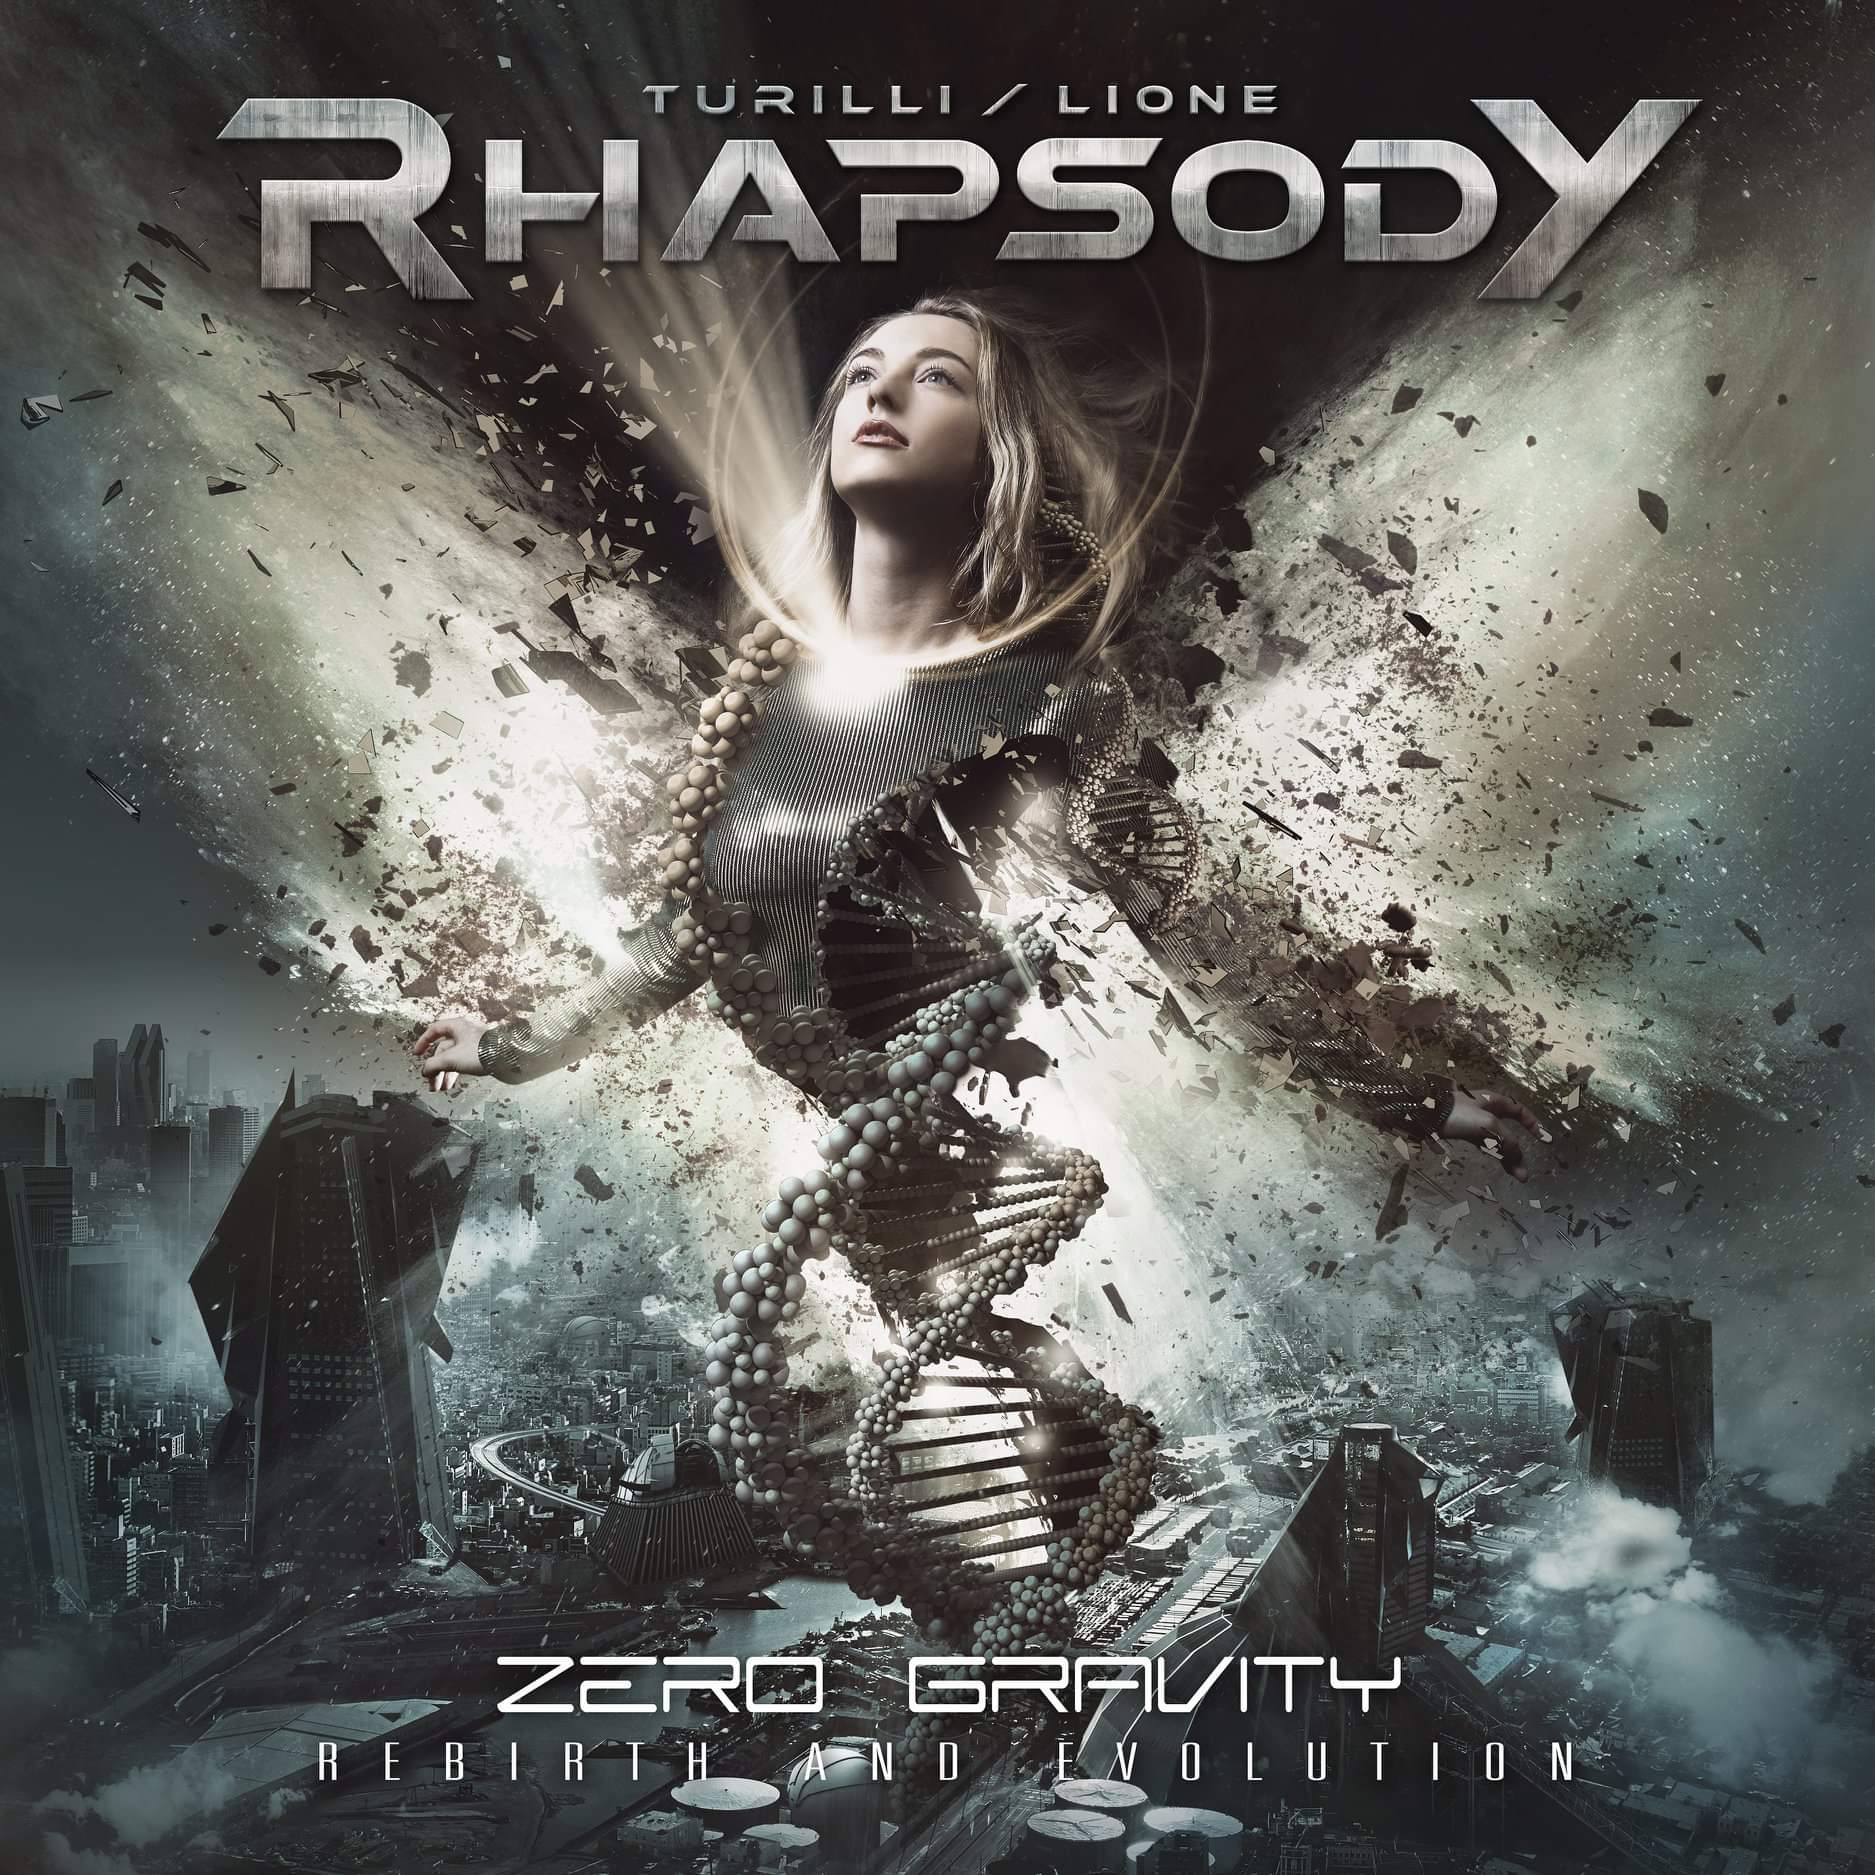 Turilli / Lione Rhapsody : Zero Gravity - Rebirth And Evolution